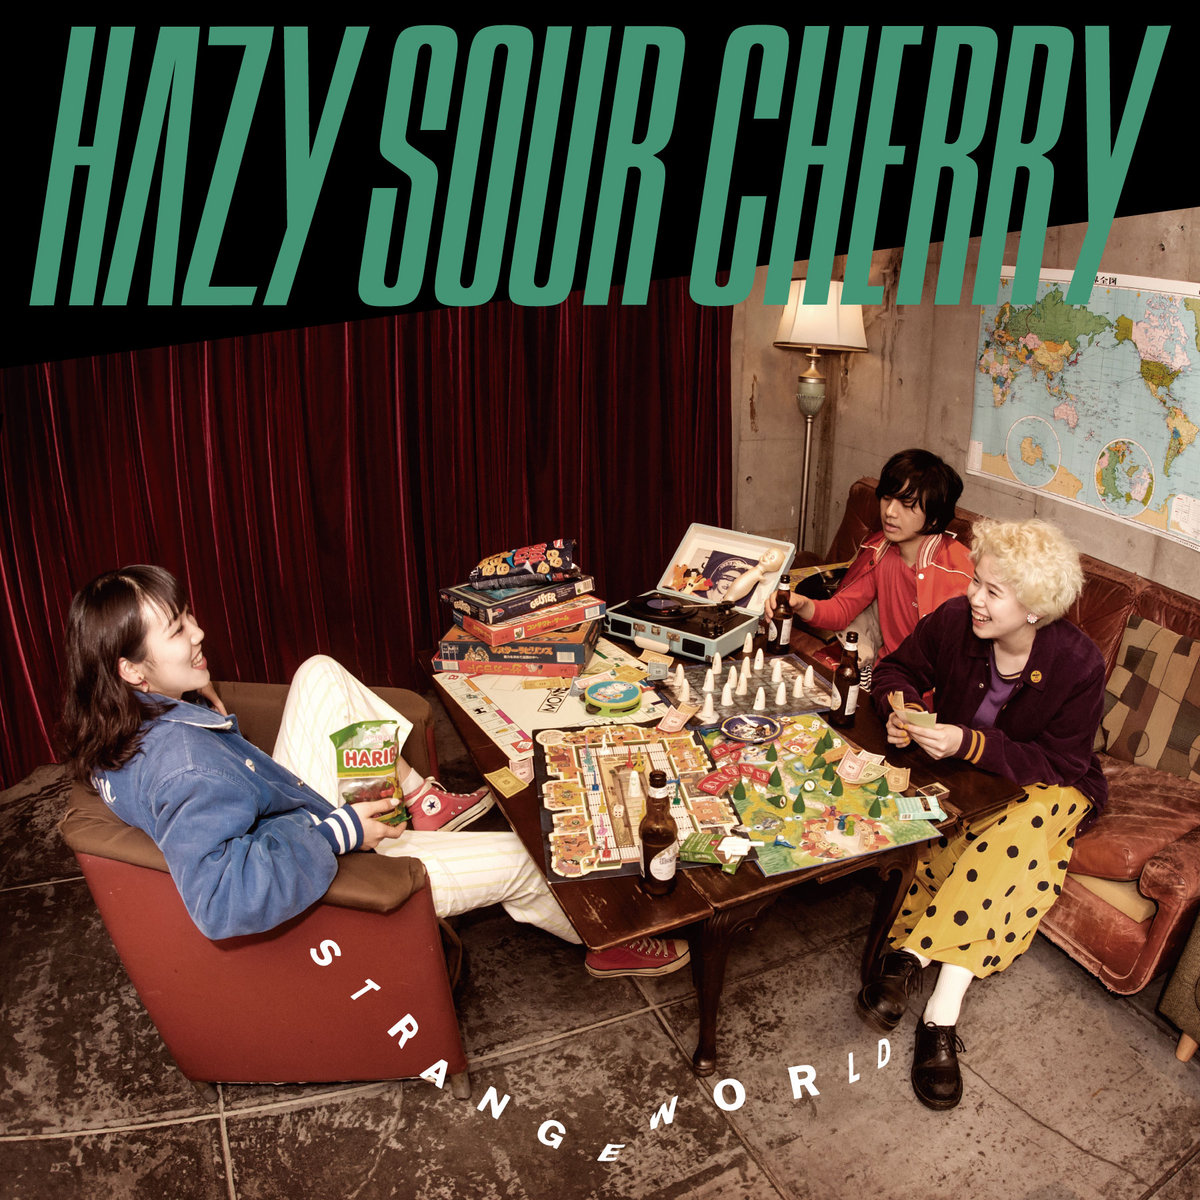 Hazy Sour Cherry – Strange World 